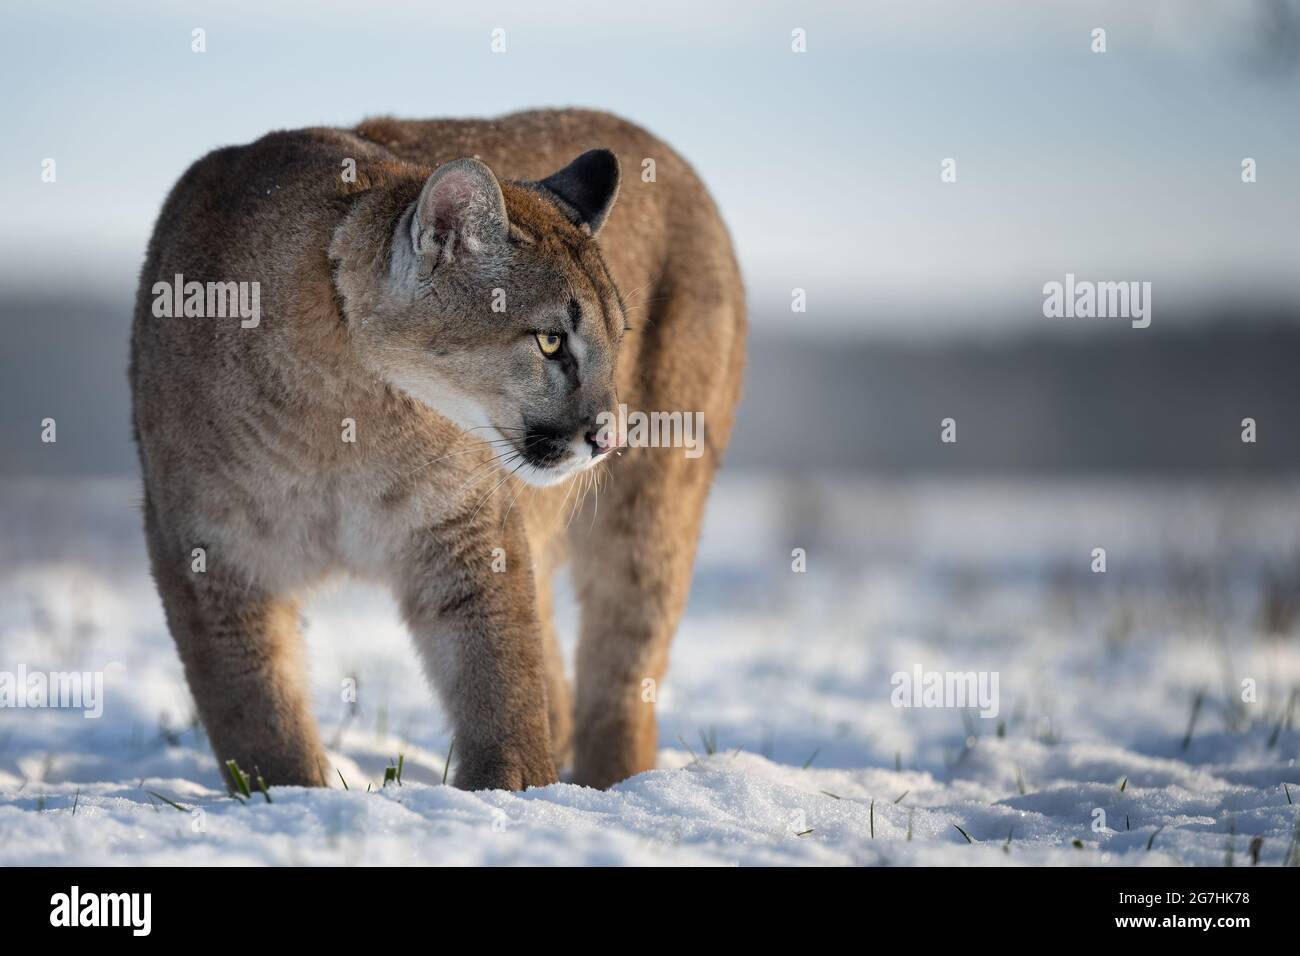 Der amerikanische Puma genießt frisch gefallenen Schnee Stockfotografie -  Alamy